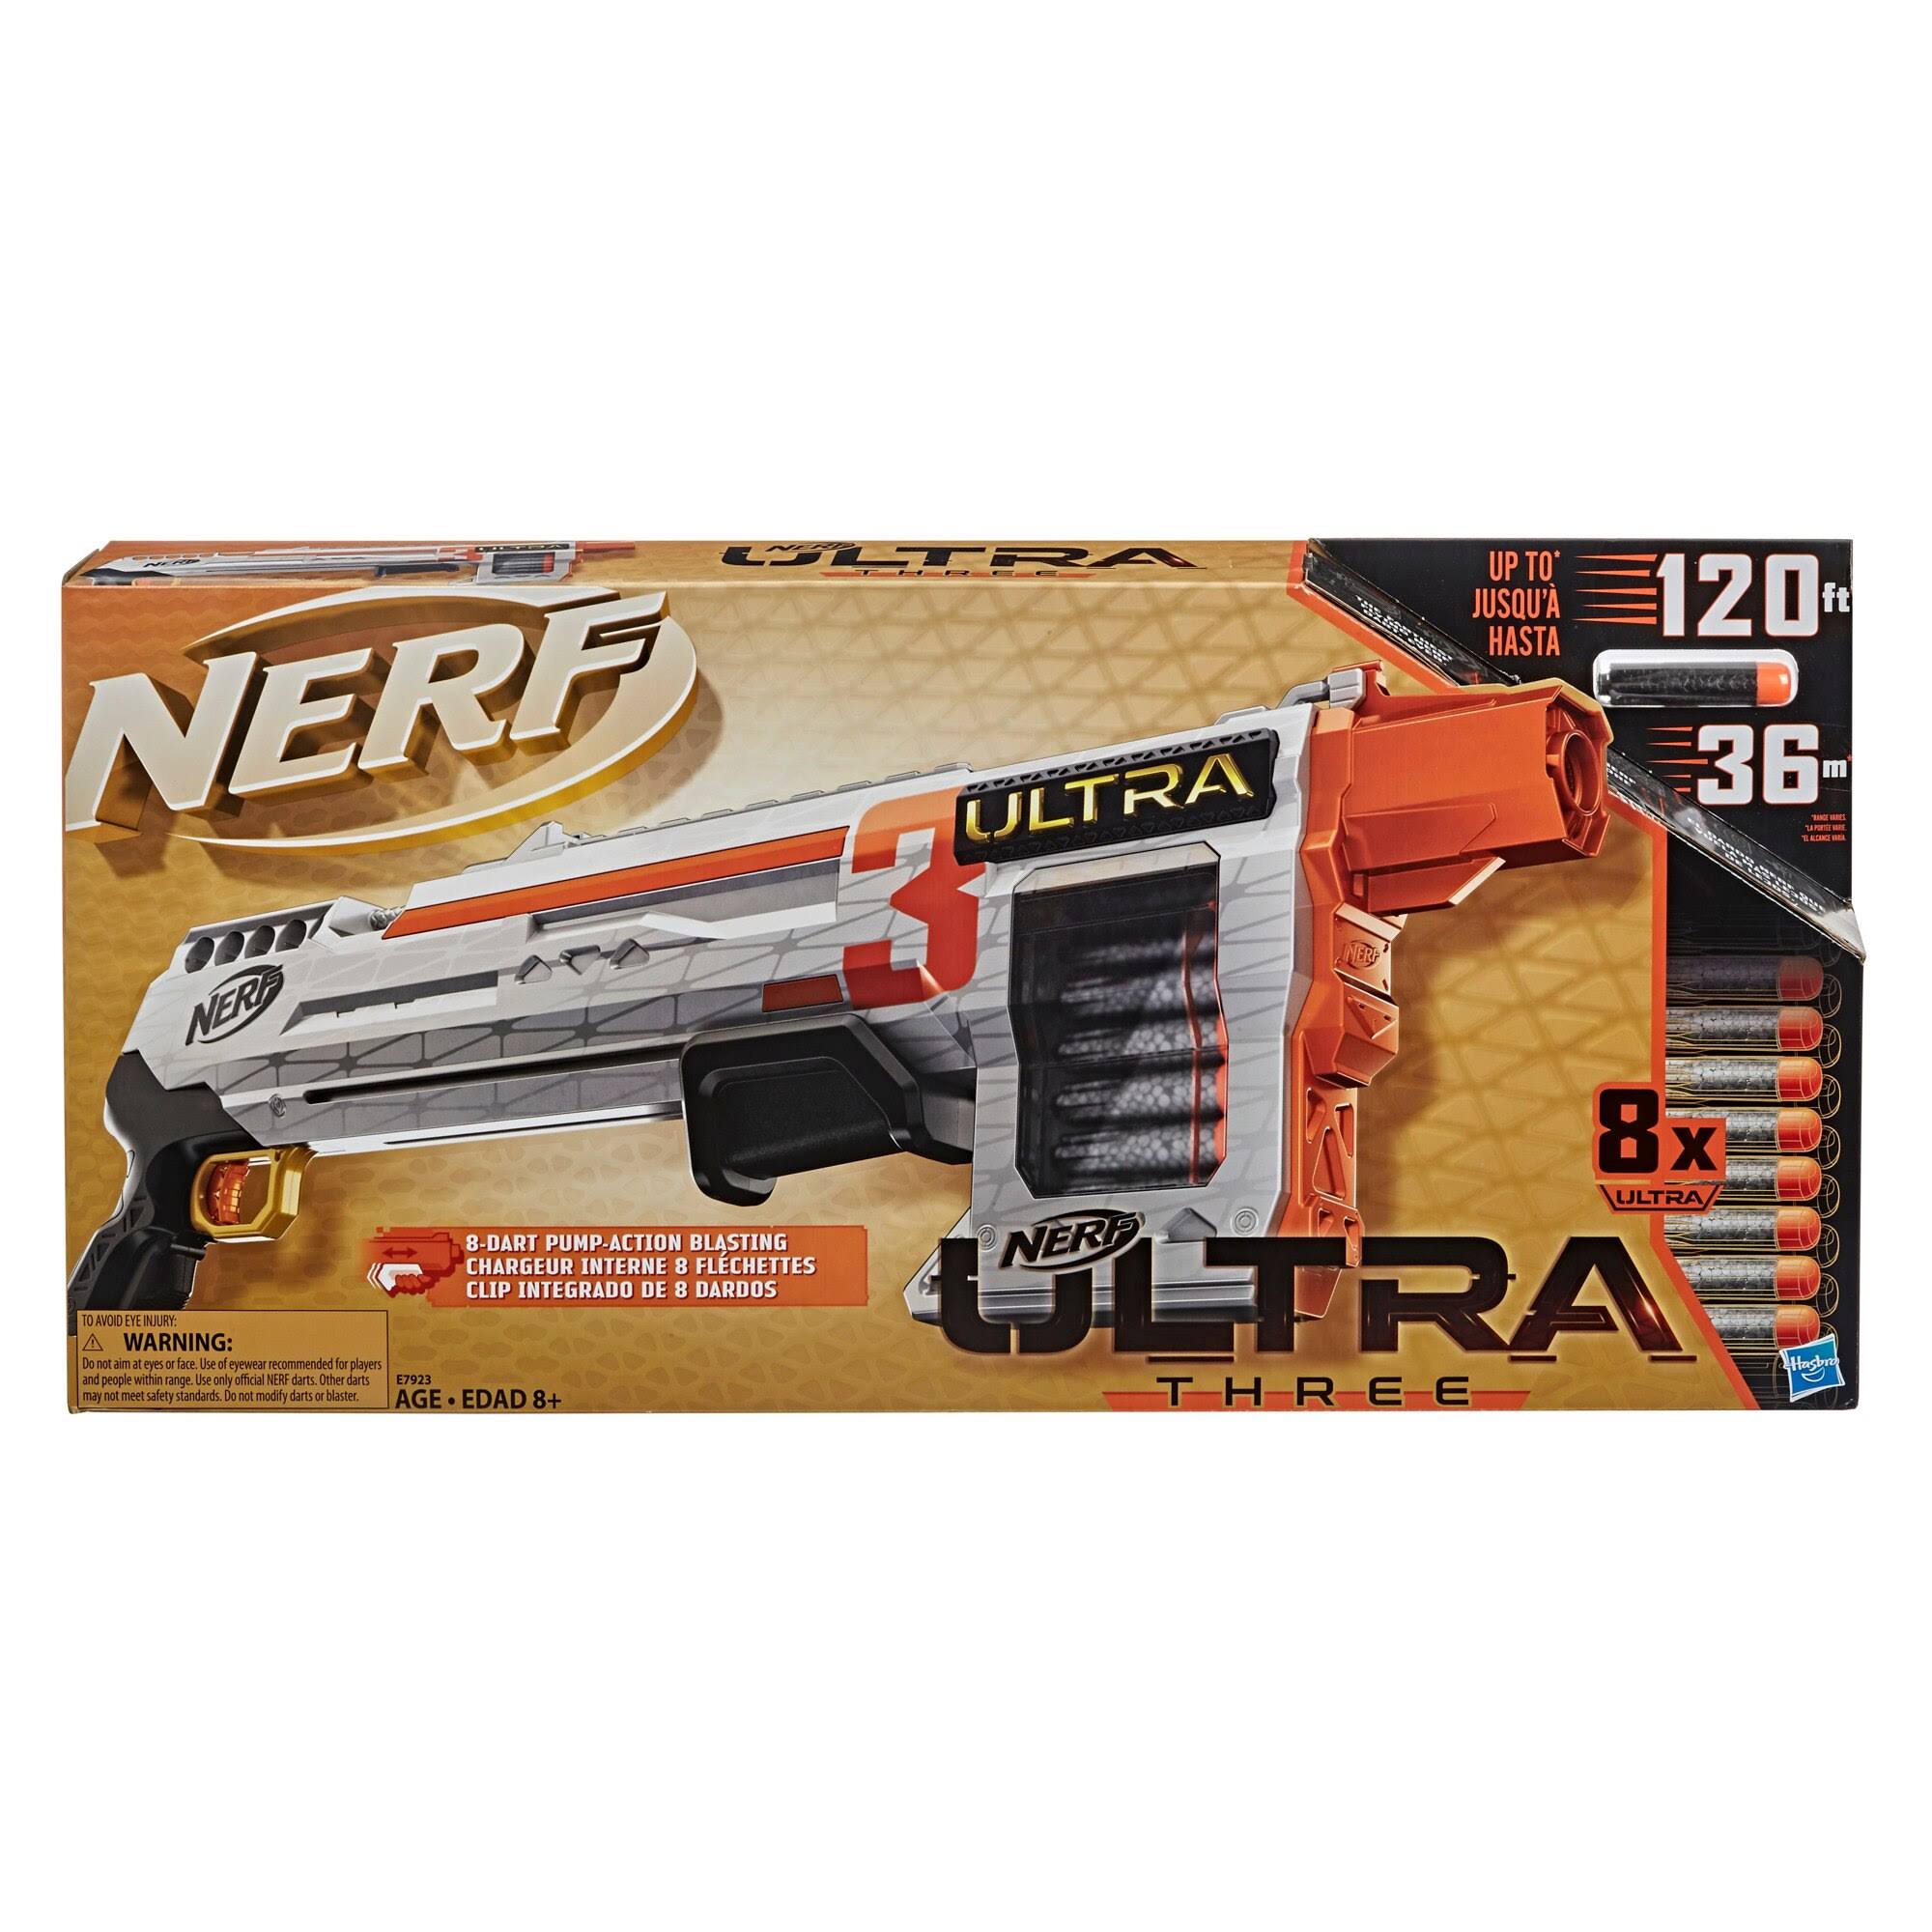 Nerf Ultra Dart, Three